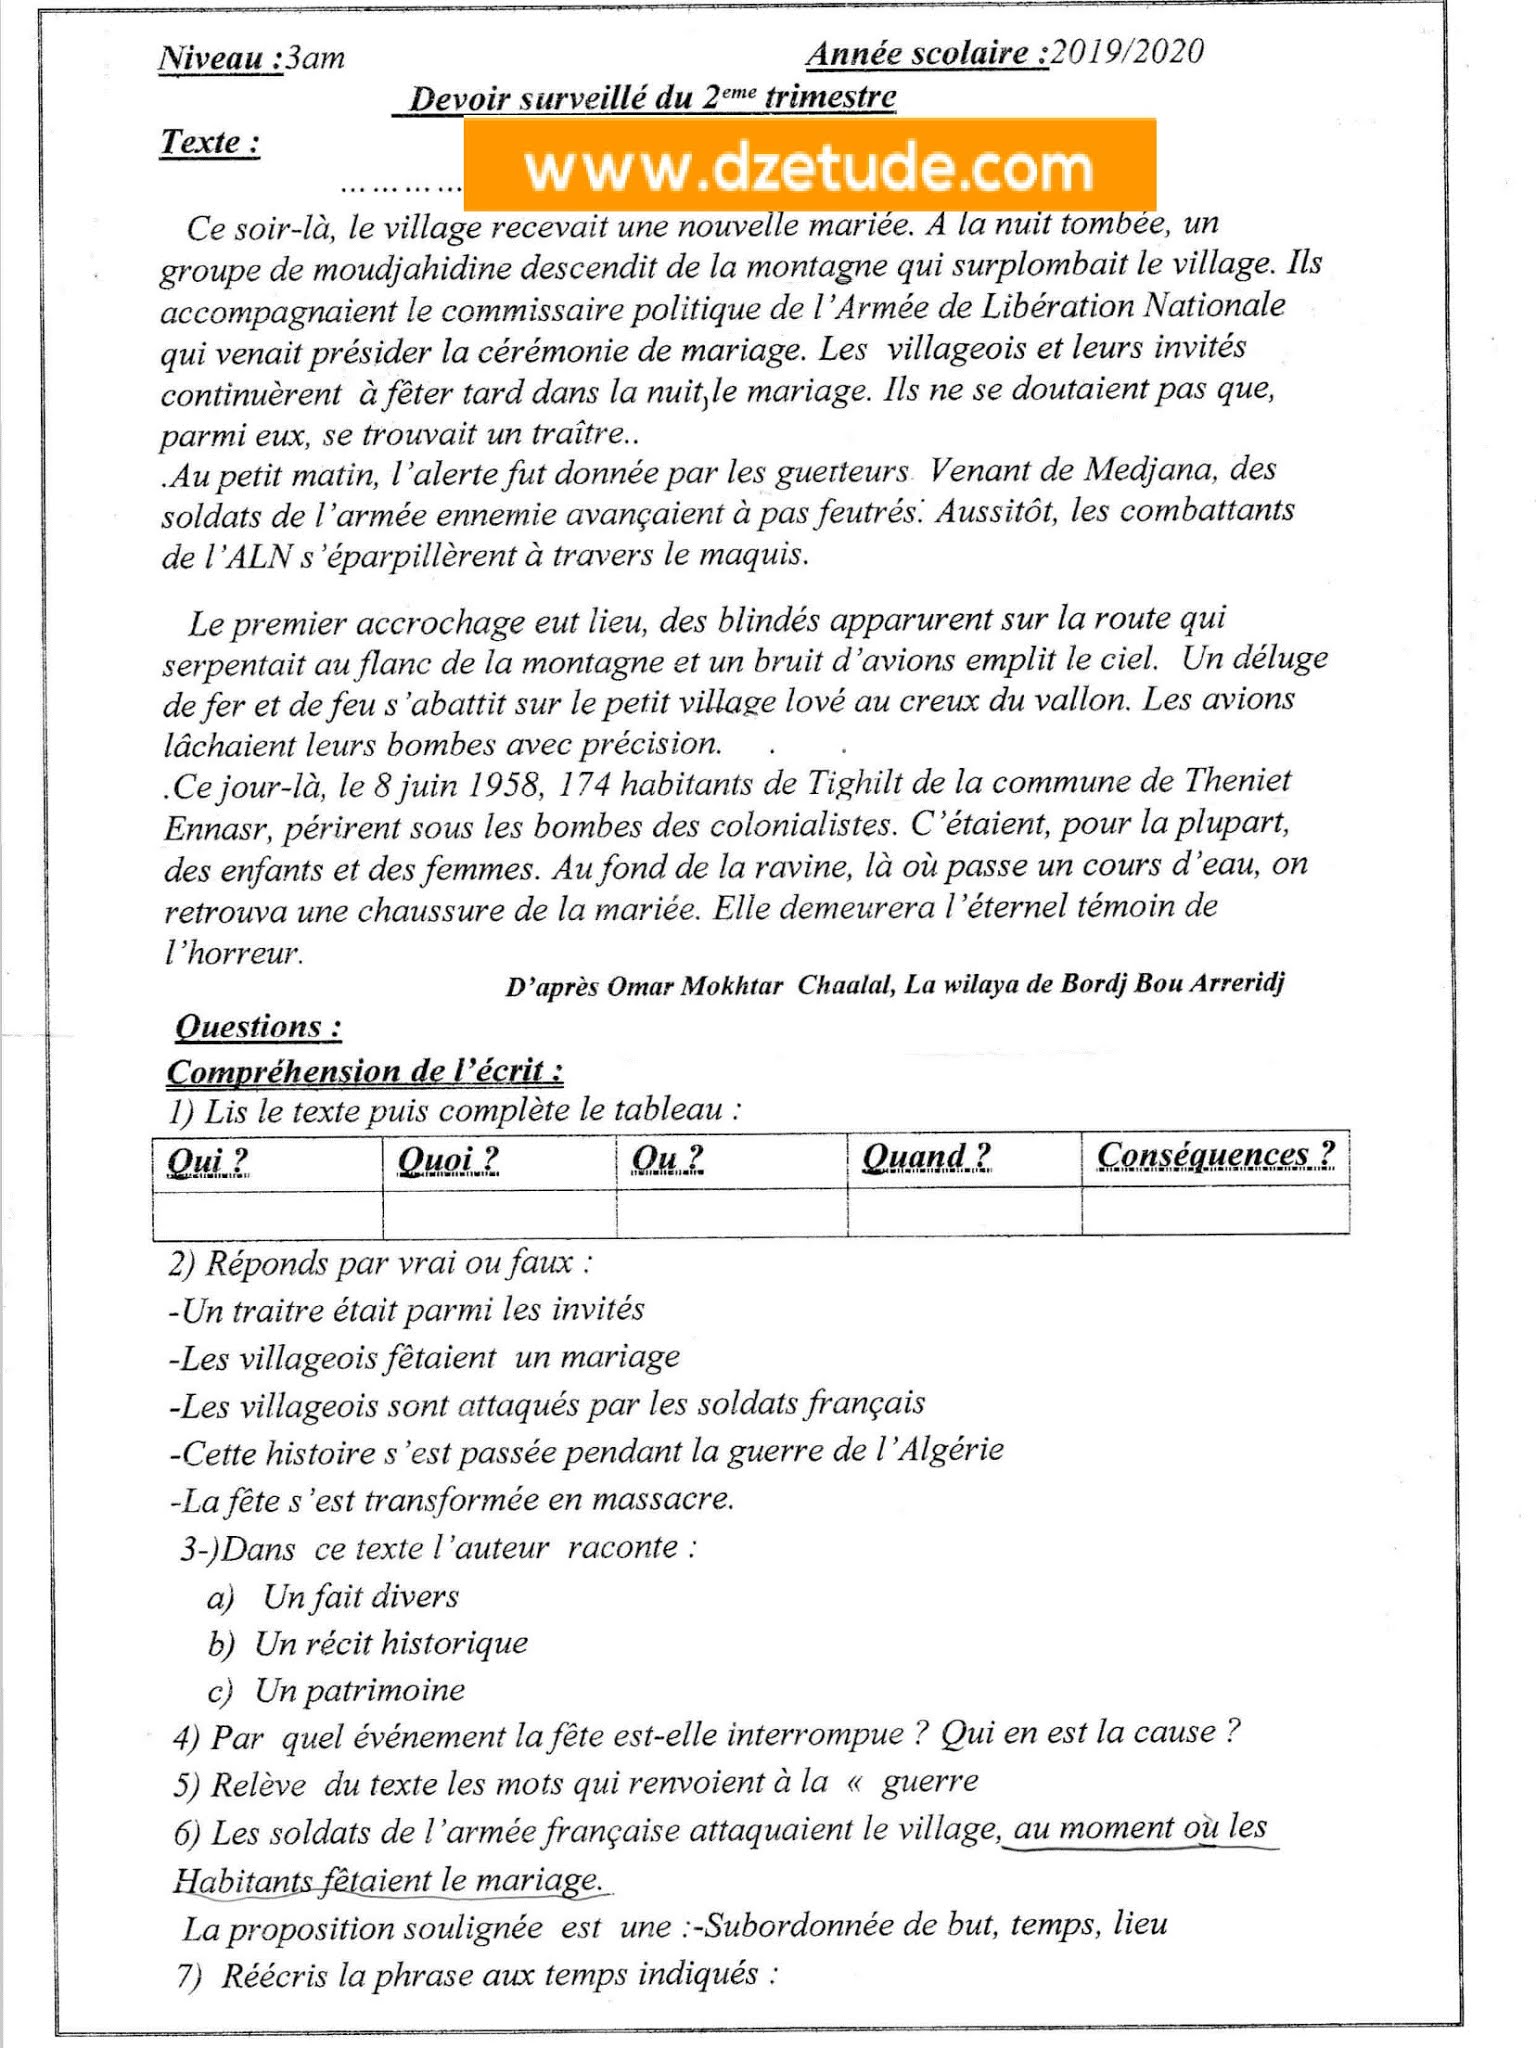 فرض اللغة الفرنسية الفصل الثاني للسنة الثالثة متوسط - الجيل الثاني نموذج 8